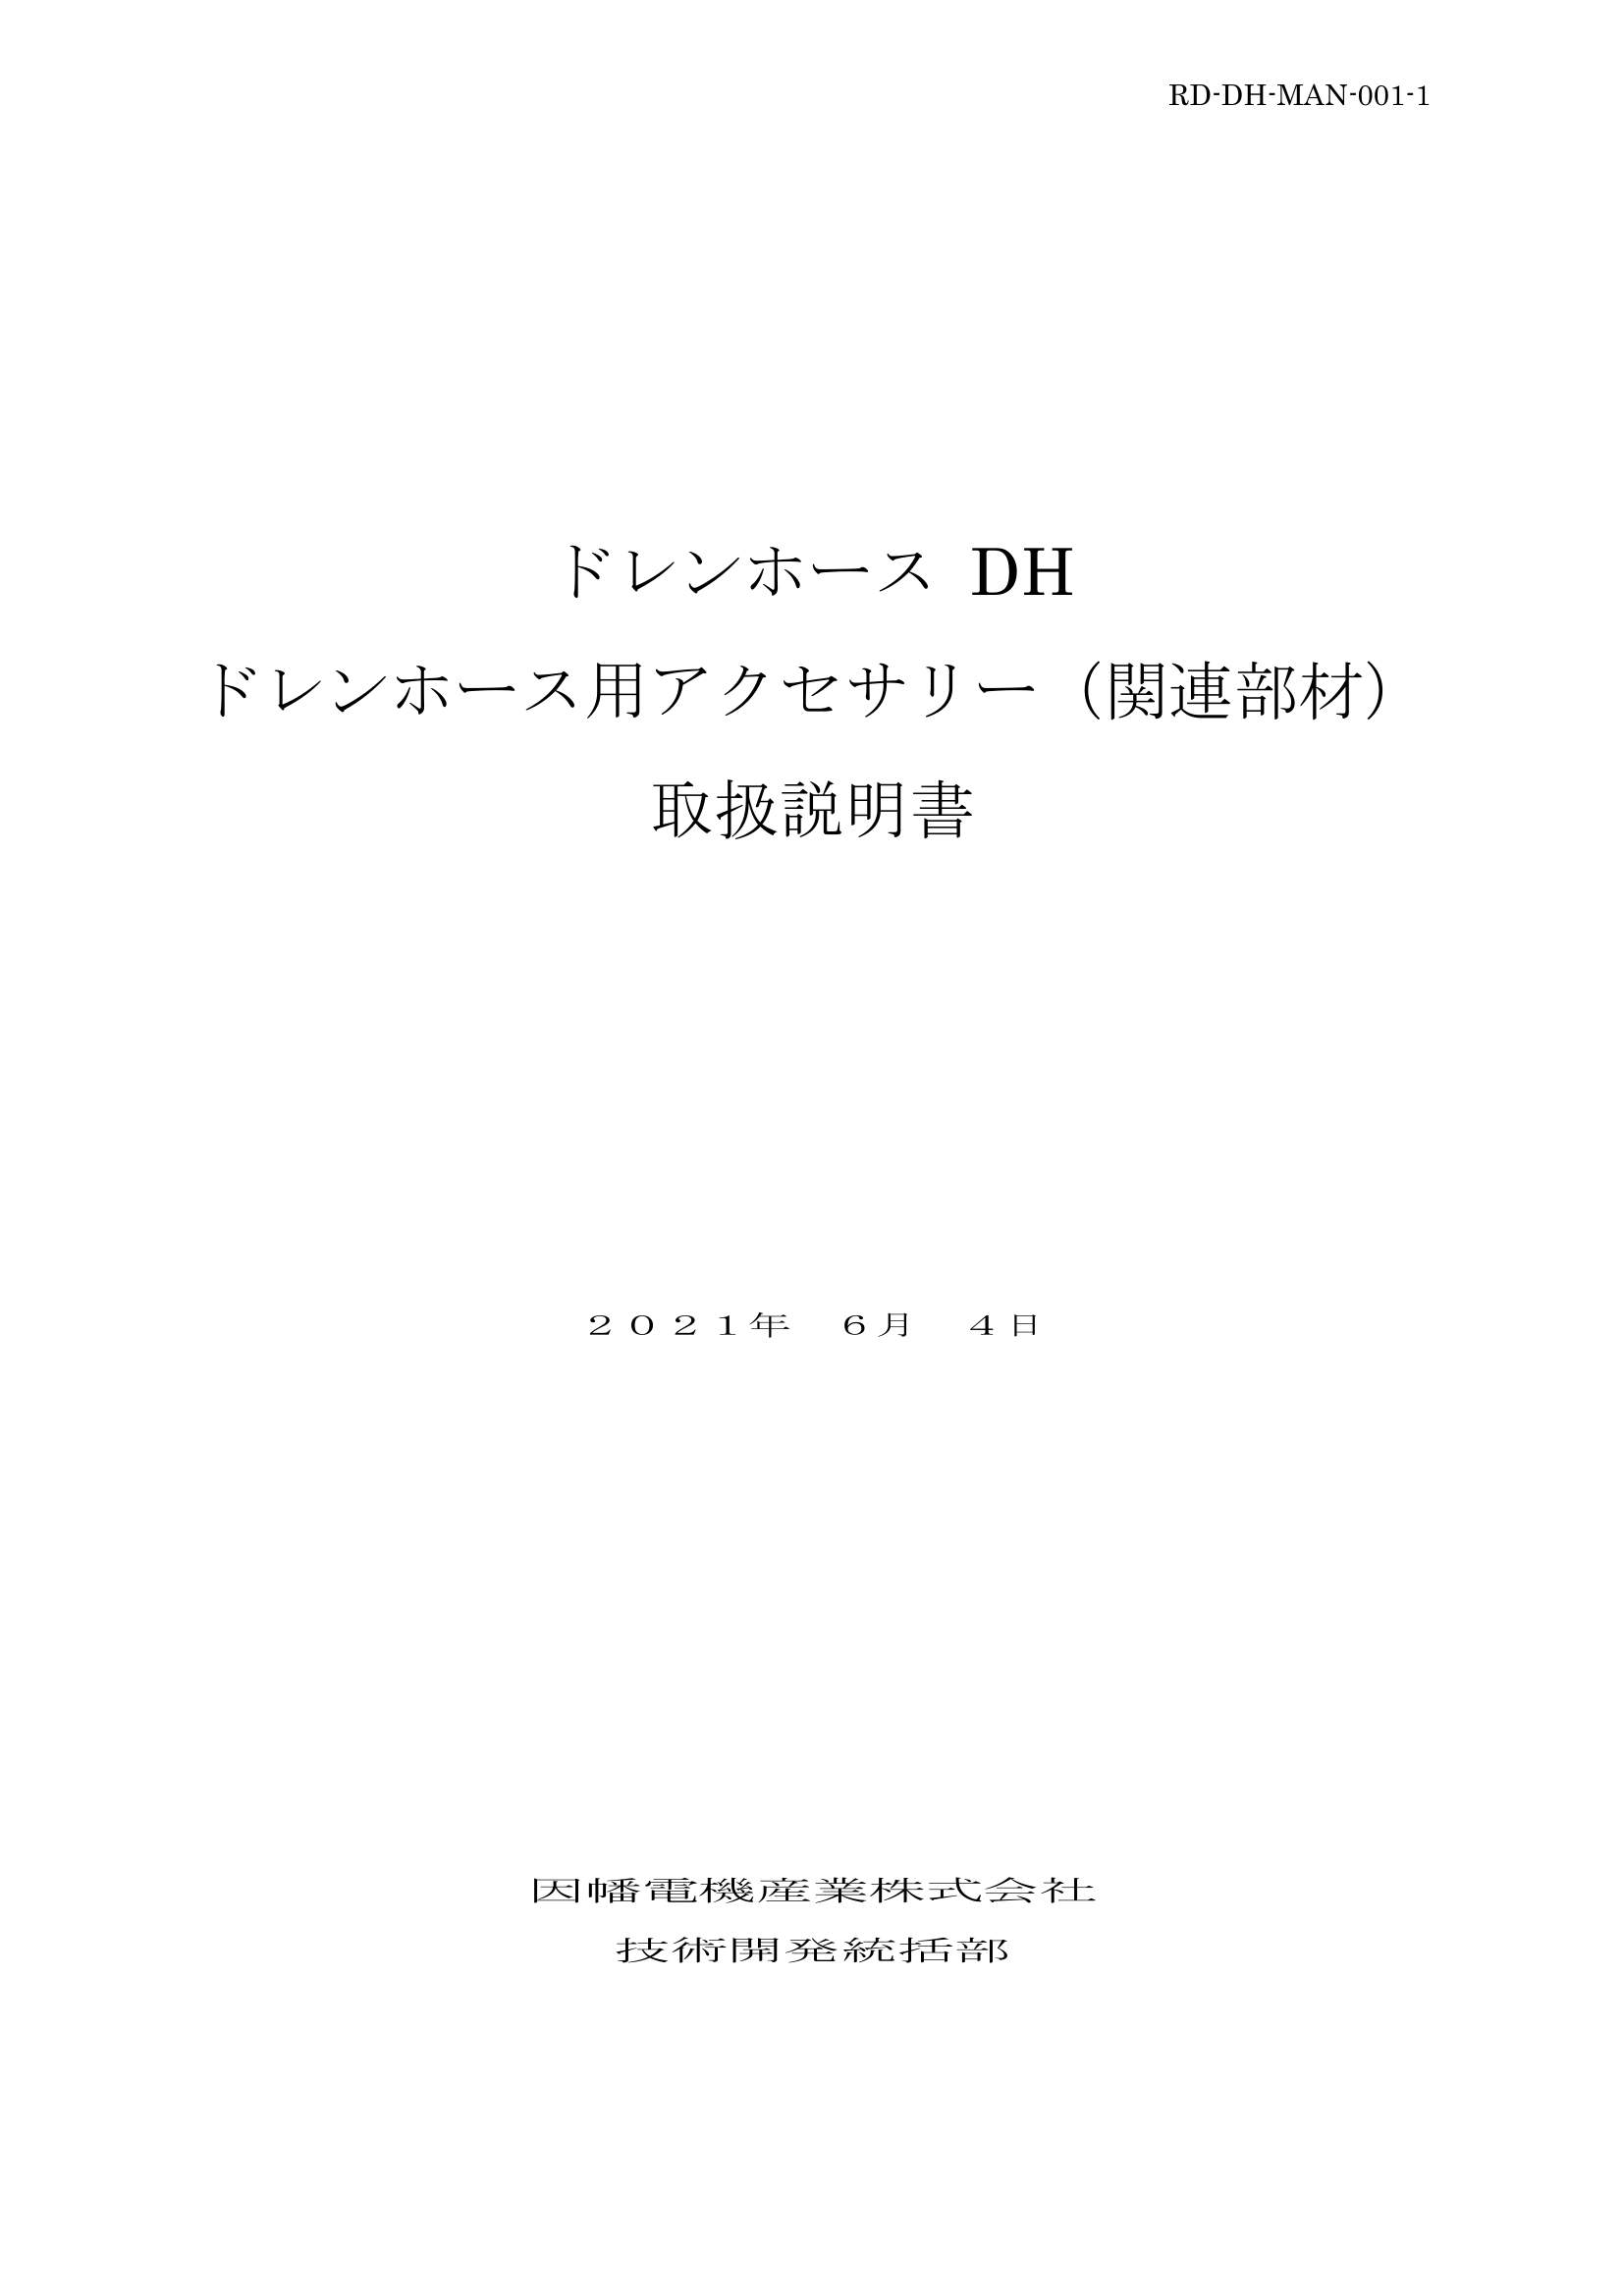 DH_取扱説明書_20210604.pdf